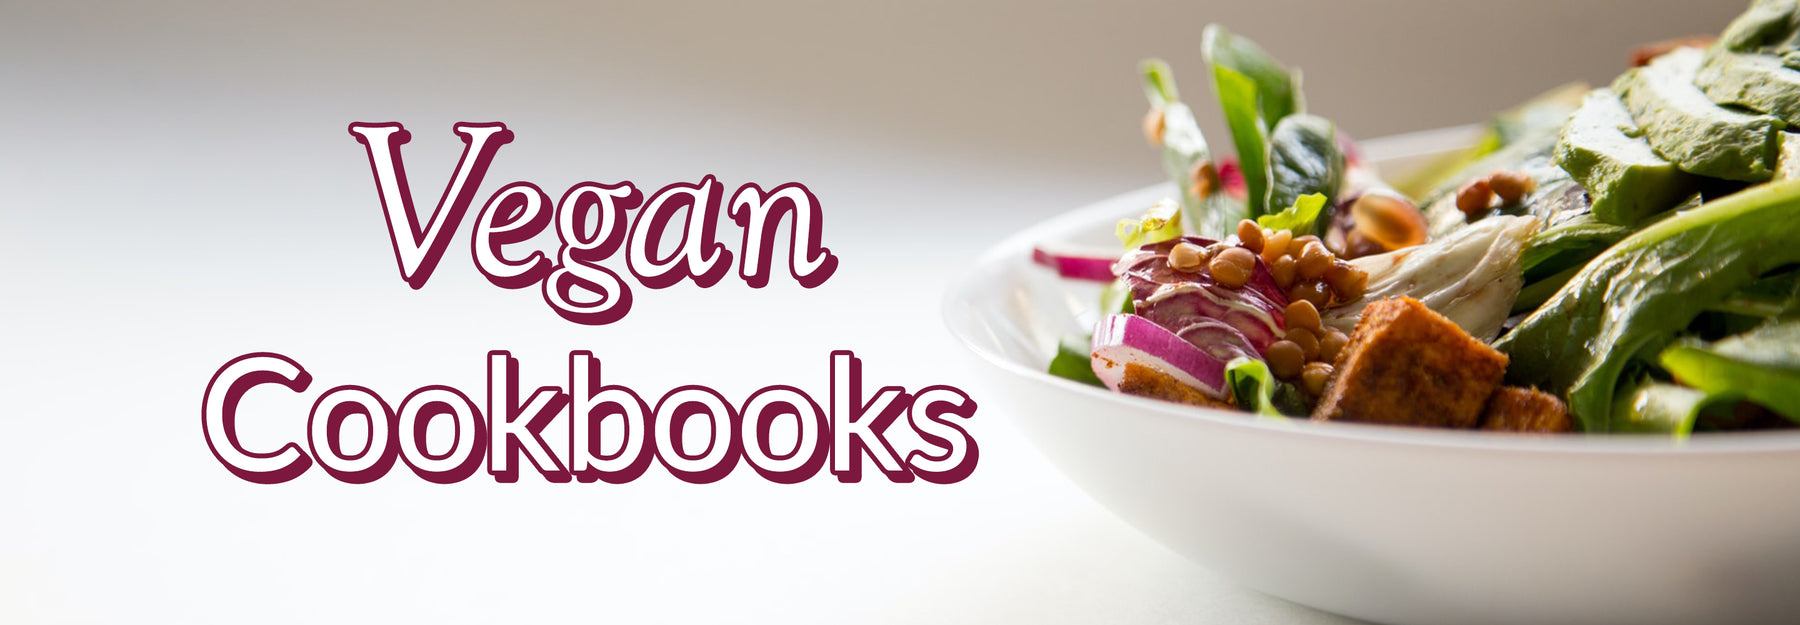 vegan cookbooks for beginners